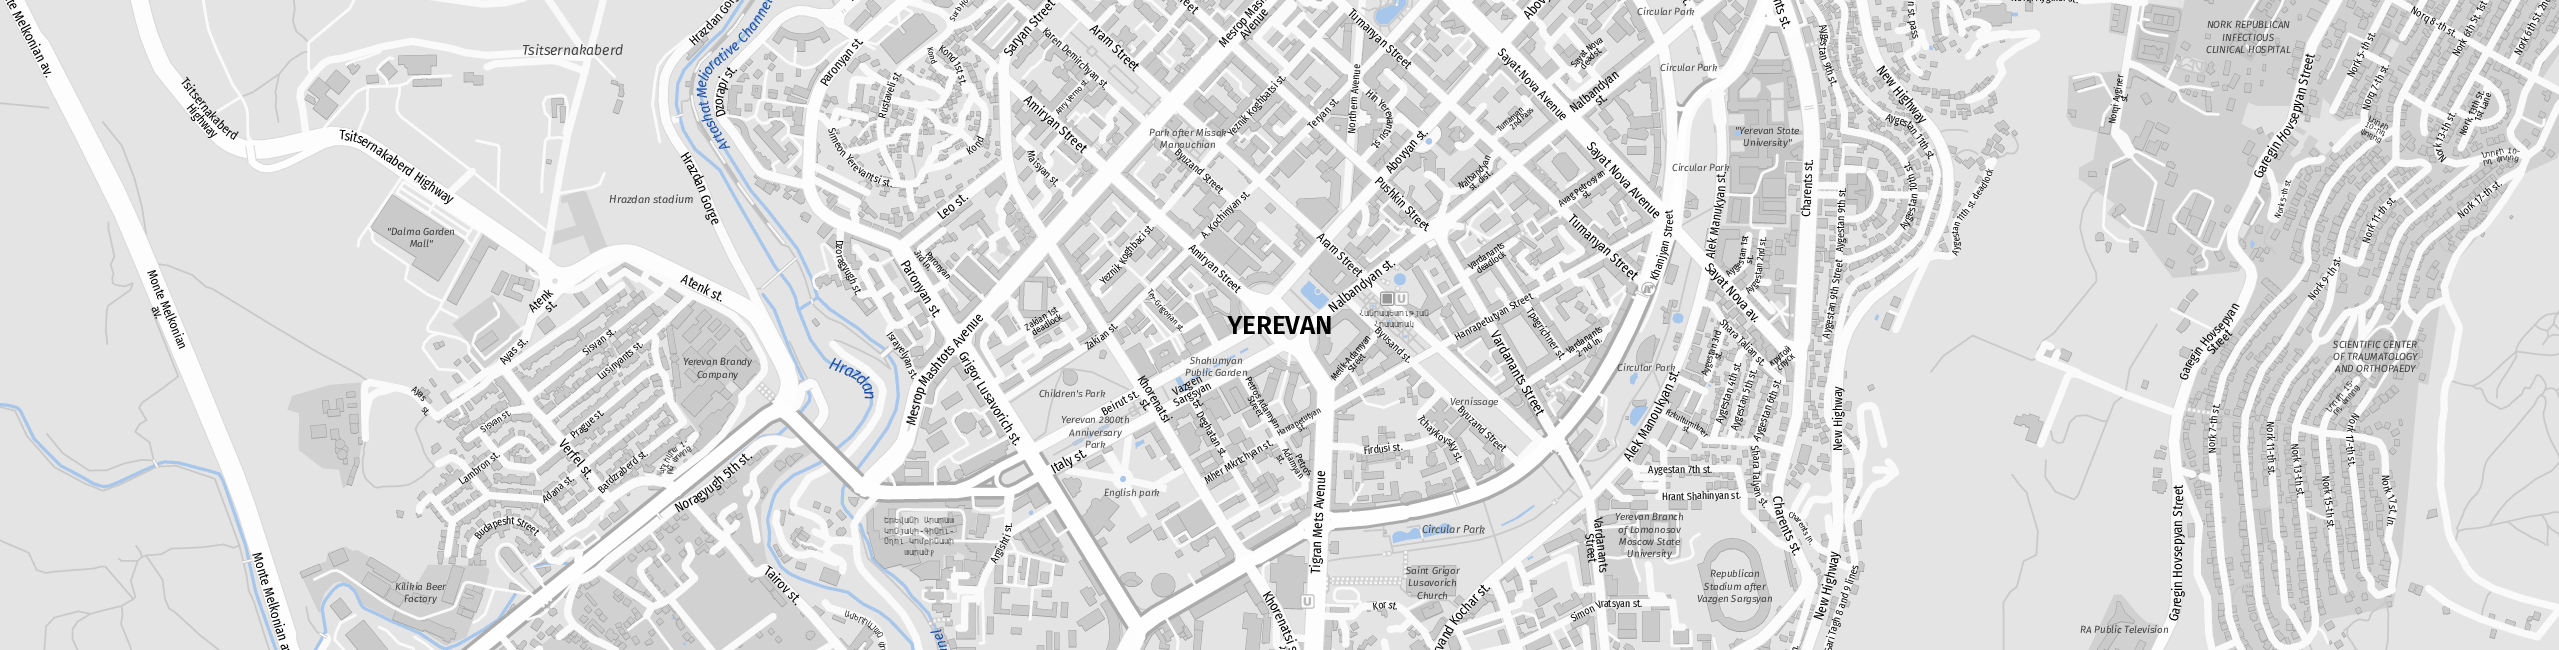 Stadtplan Eriwan zum Downloaden.